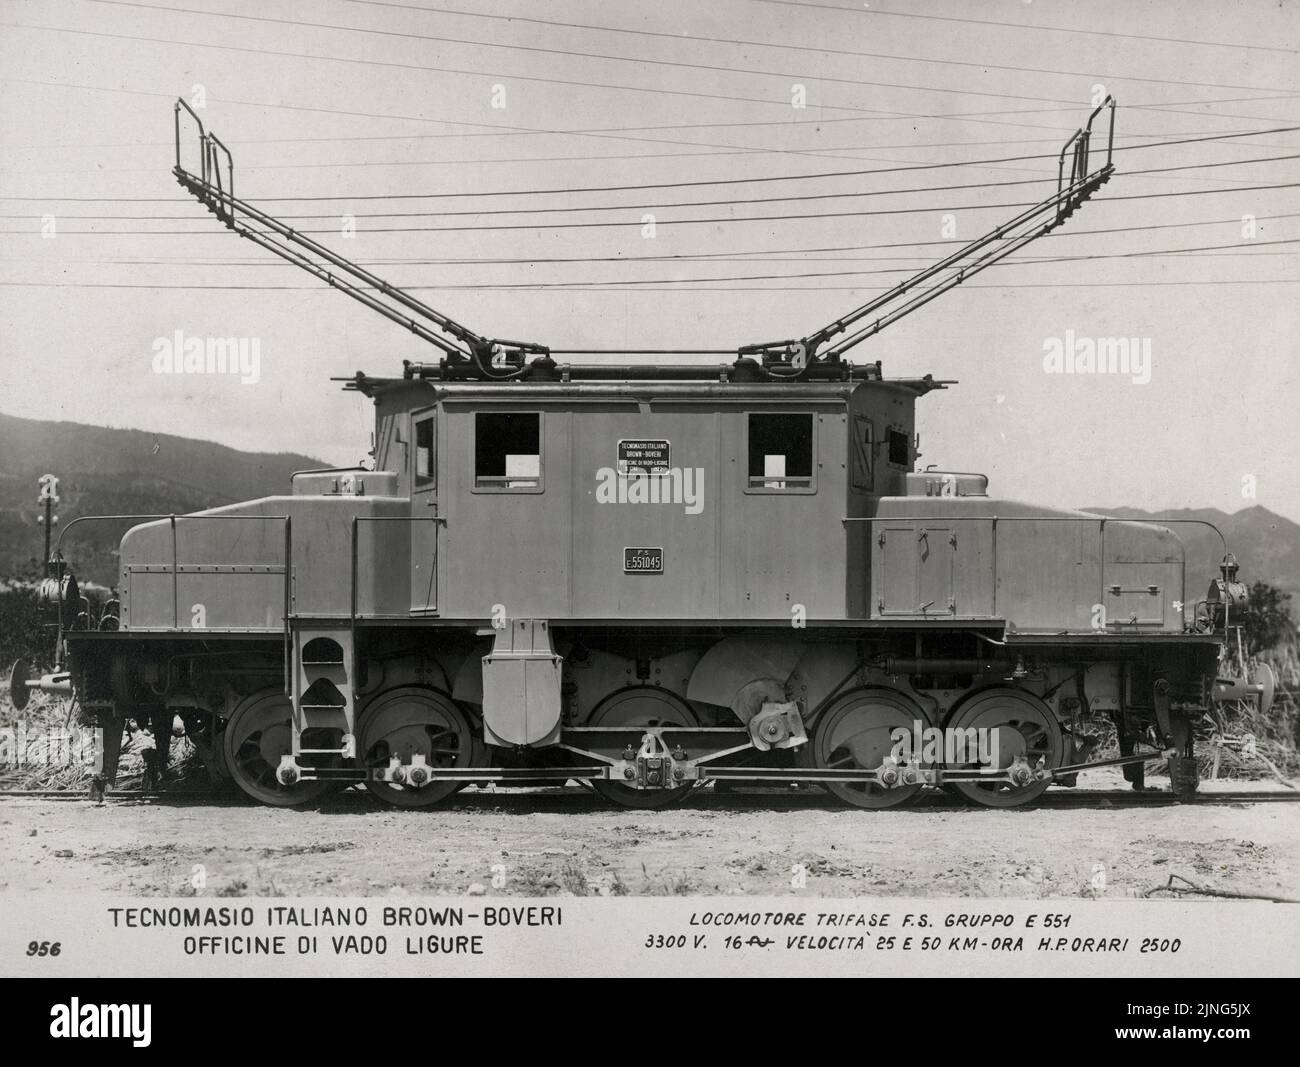 Treni e Tram - Locomotore Trifase FS Gruppo E551 Tecnomasio Italiano Brown-Bover Officine di Vado Ligure (anni 20) Stock Photo